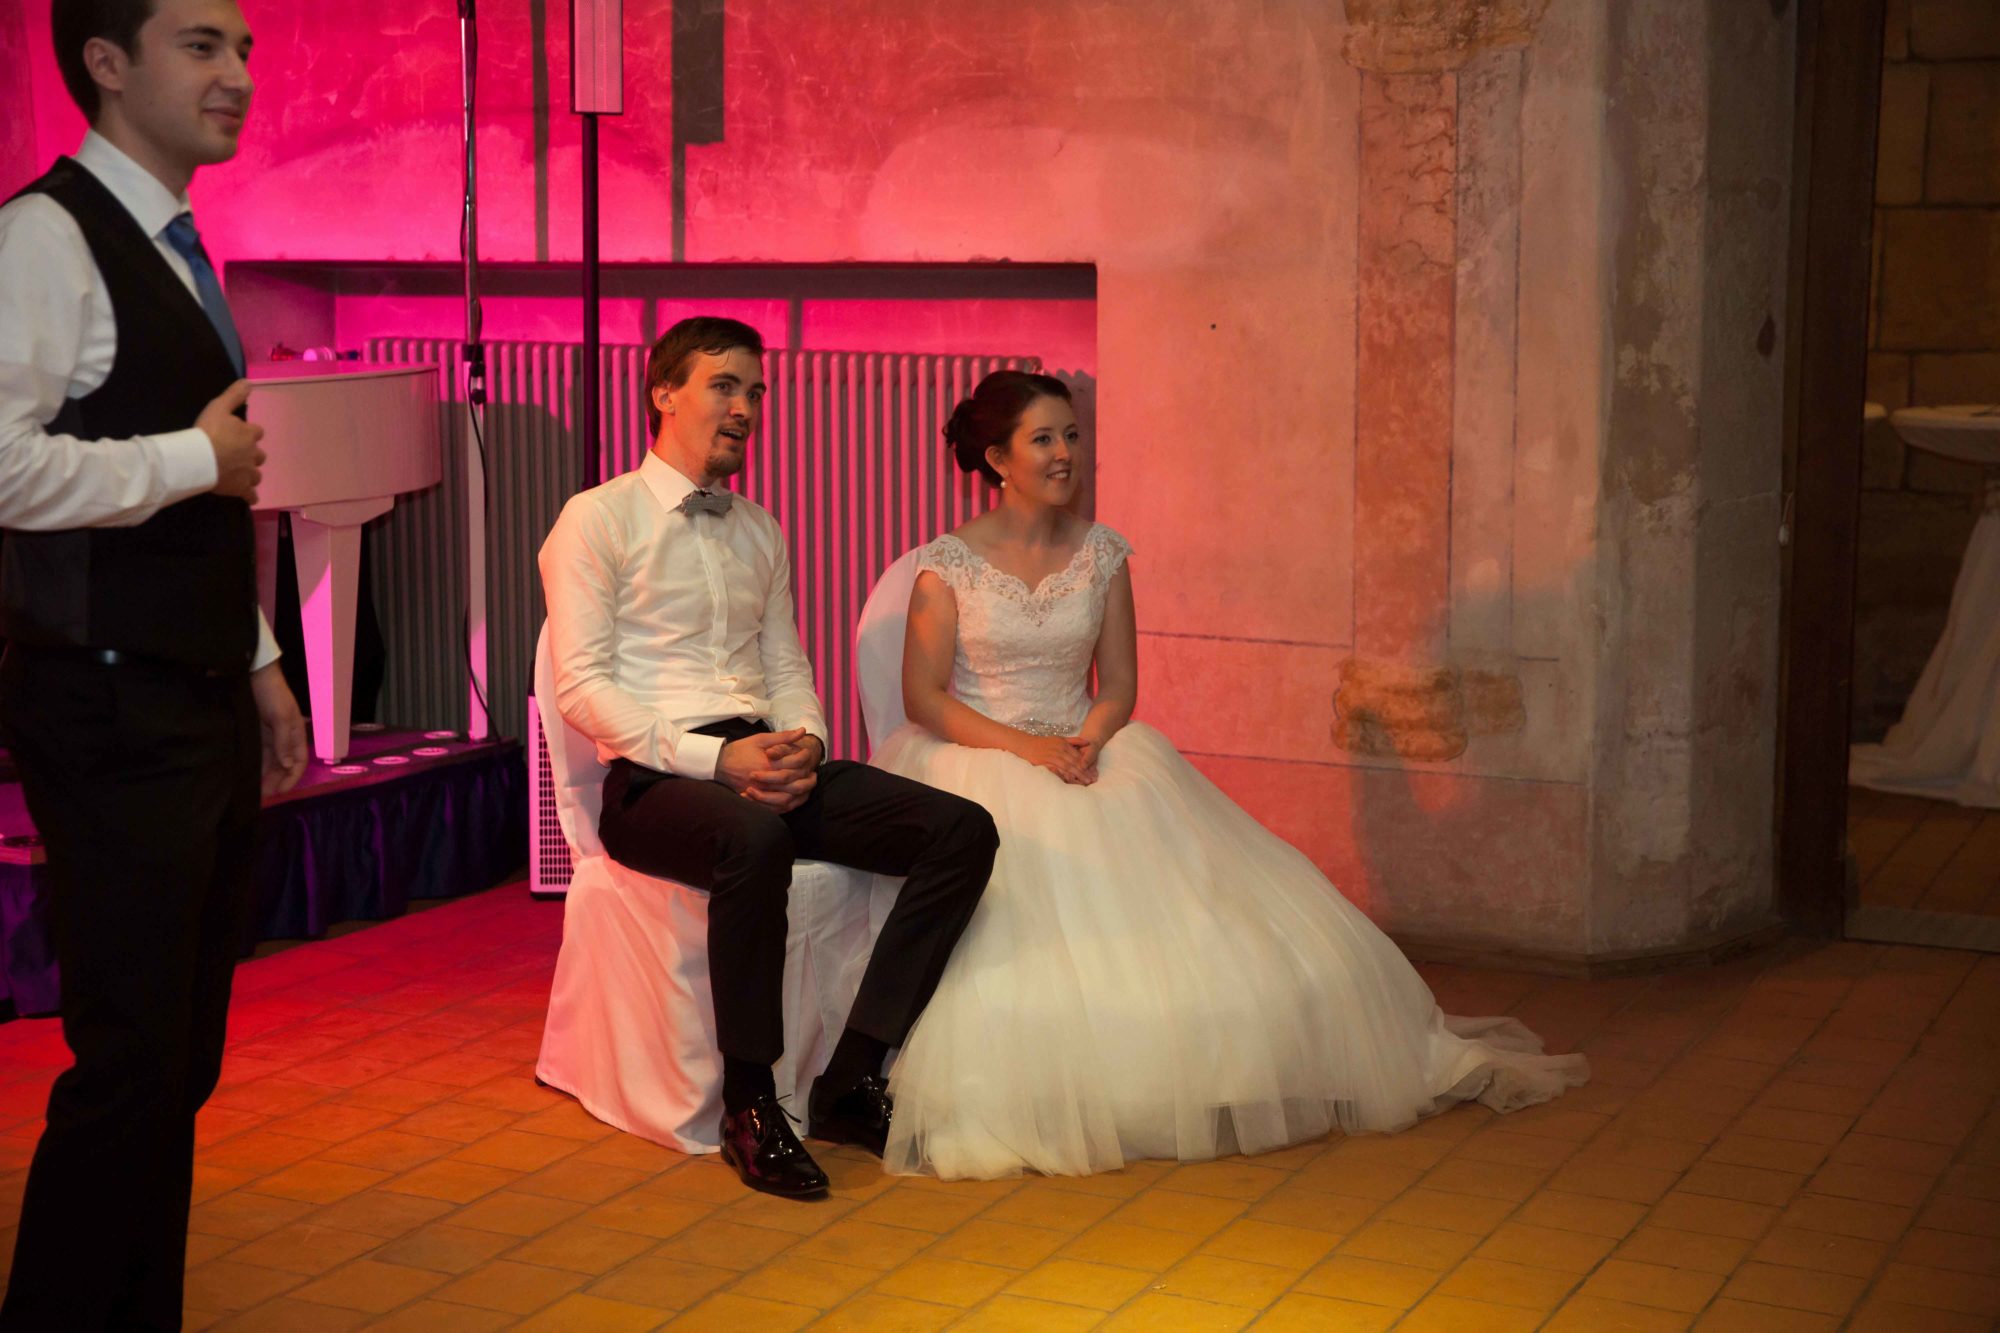 Hochzeitsbilder, Hochzeitsfotografie, Schwäbisch Gmünd, Kloster Lorch, Hochzeitsfotograf, Kirchliche Trauung, Hochzeitsfeier